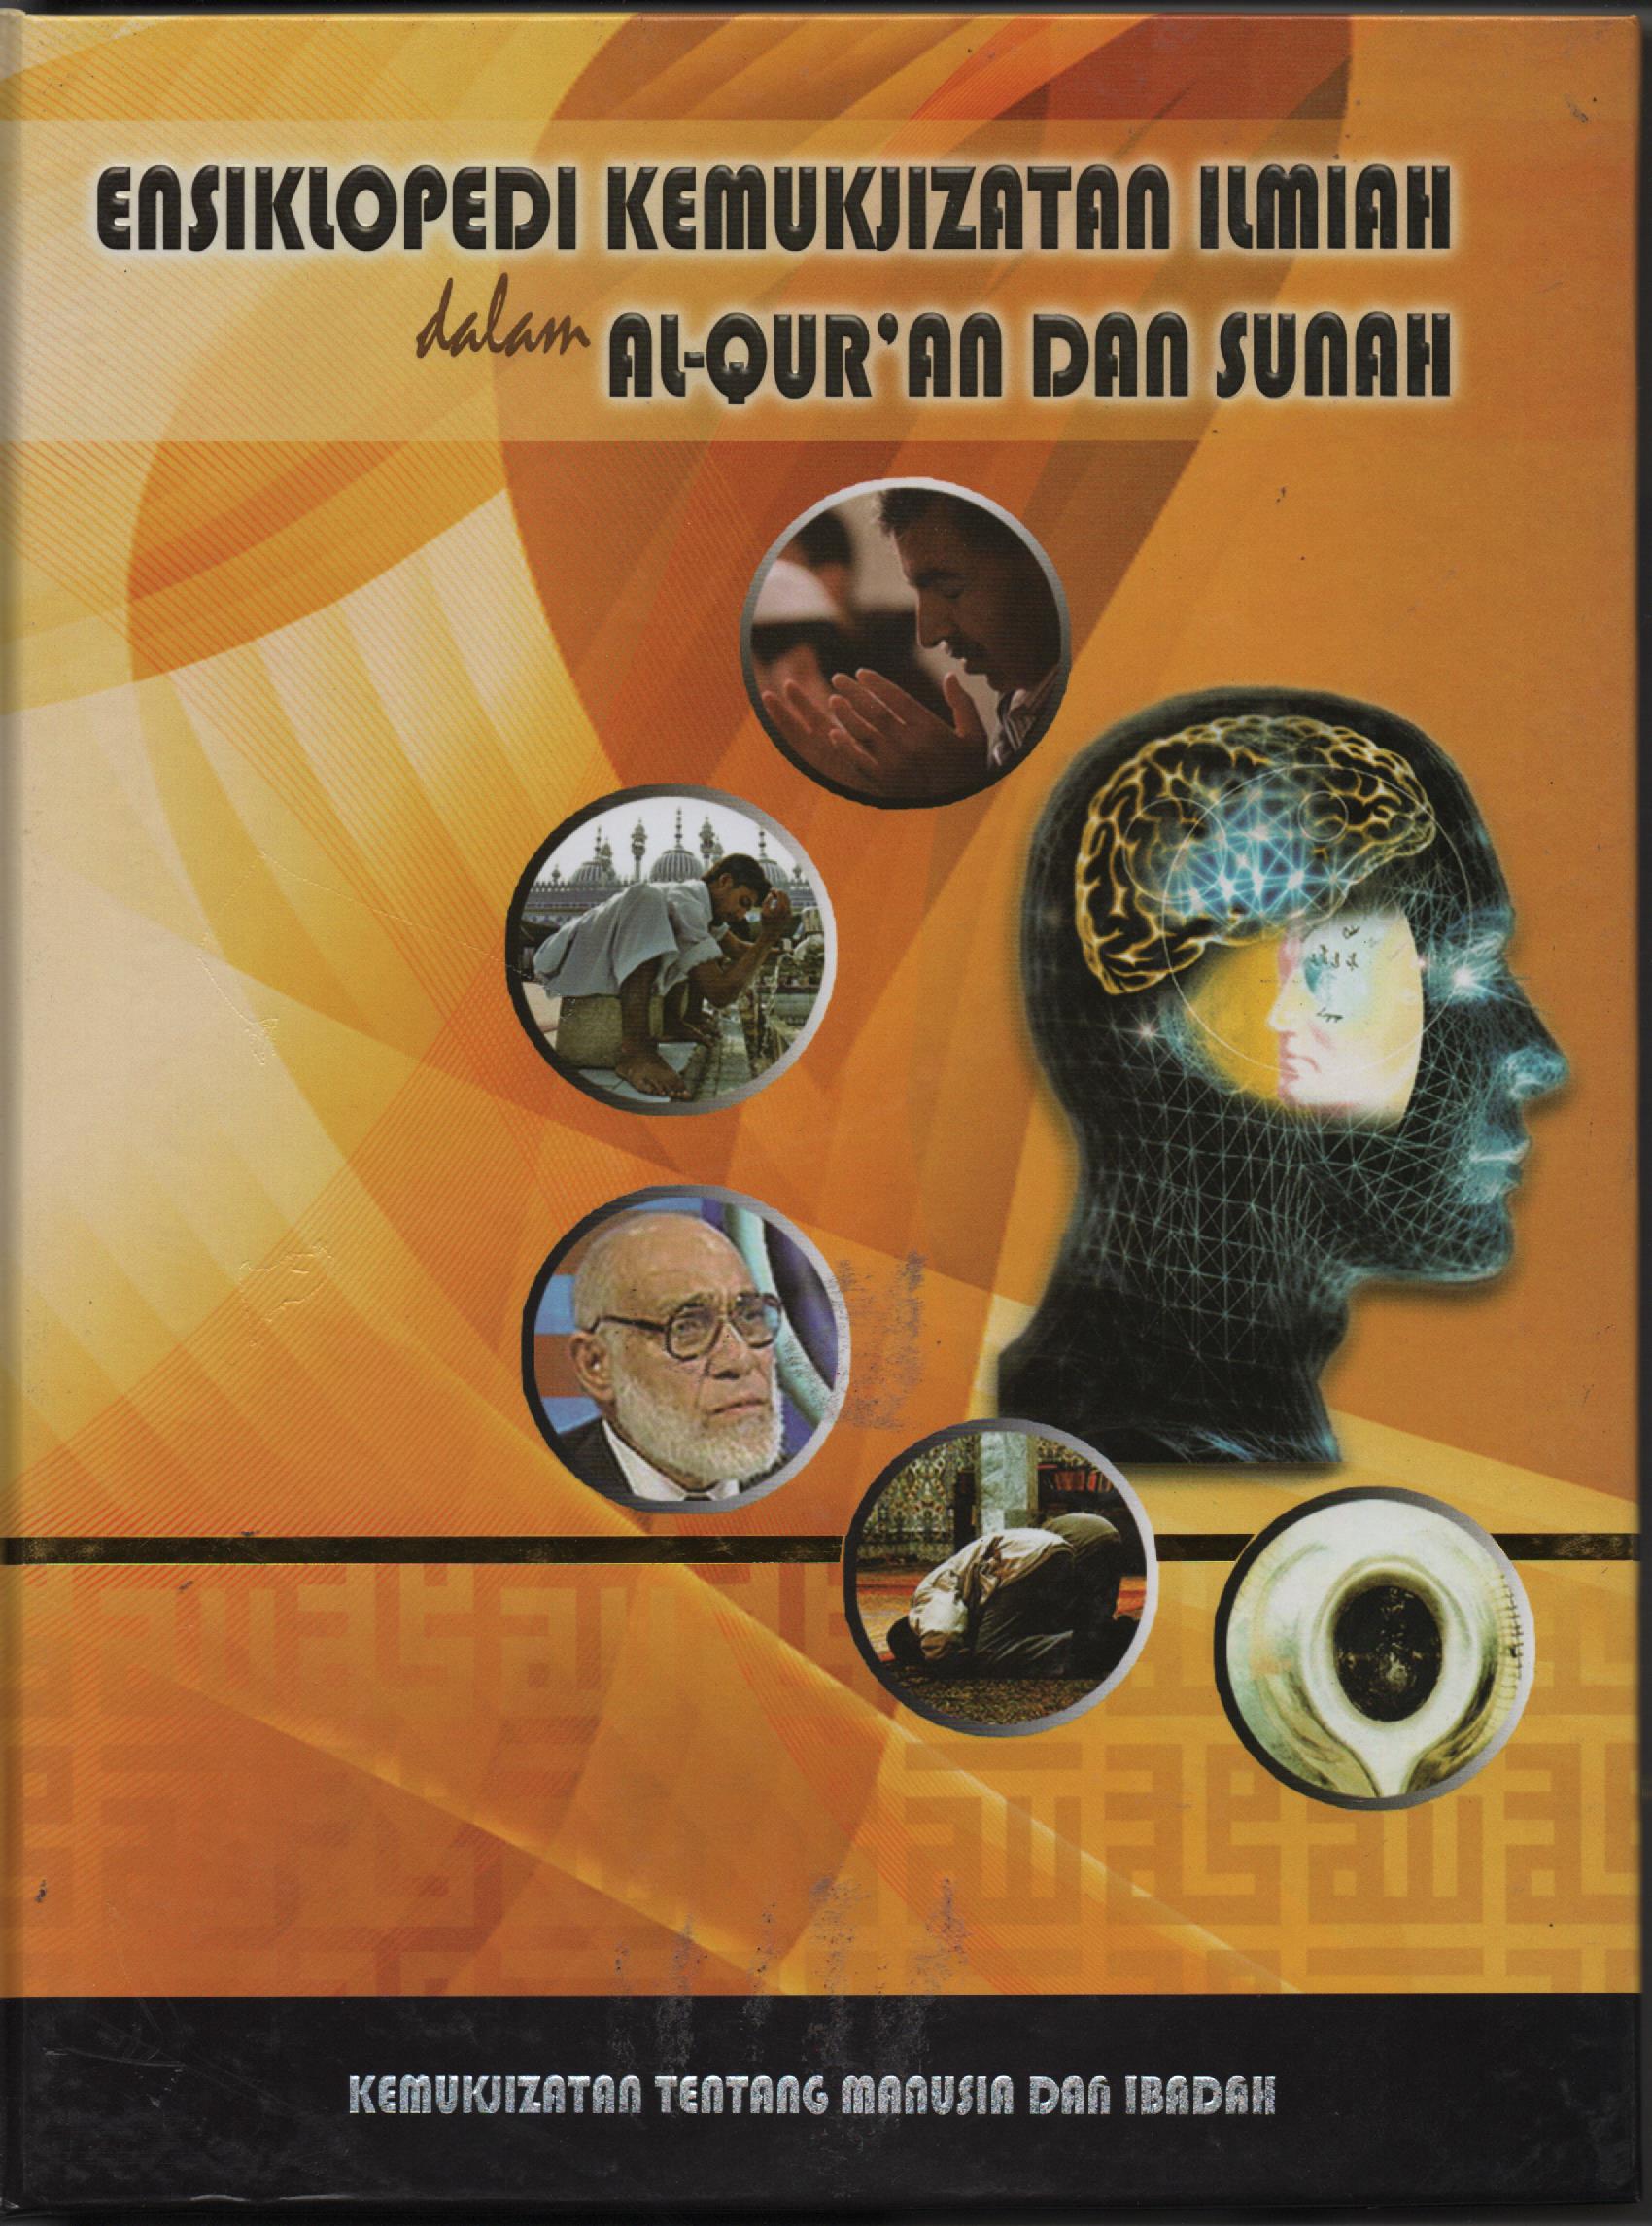 Ensiklopedi Kemukjizatan Ilmiah Dalam Al-Qur'an dan Sunah Jilid 2 :  Kemukjizatan Tentang Manusia dan Ibadah